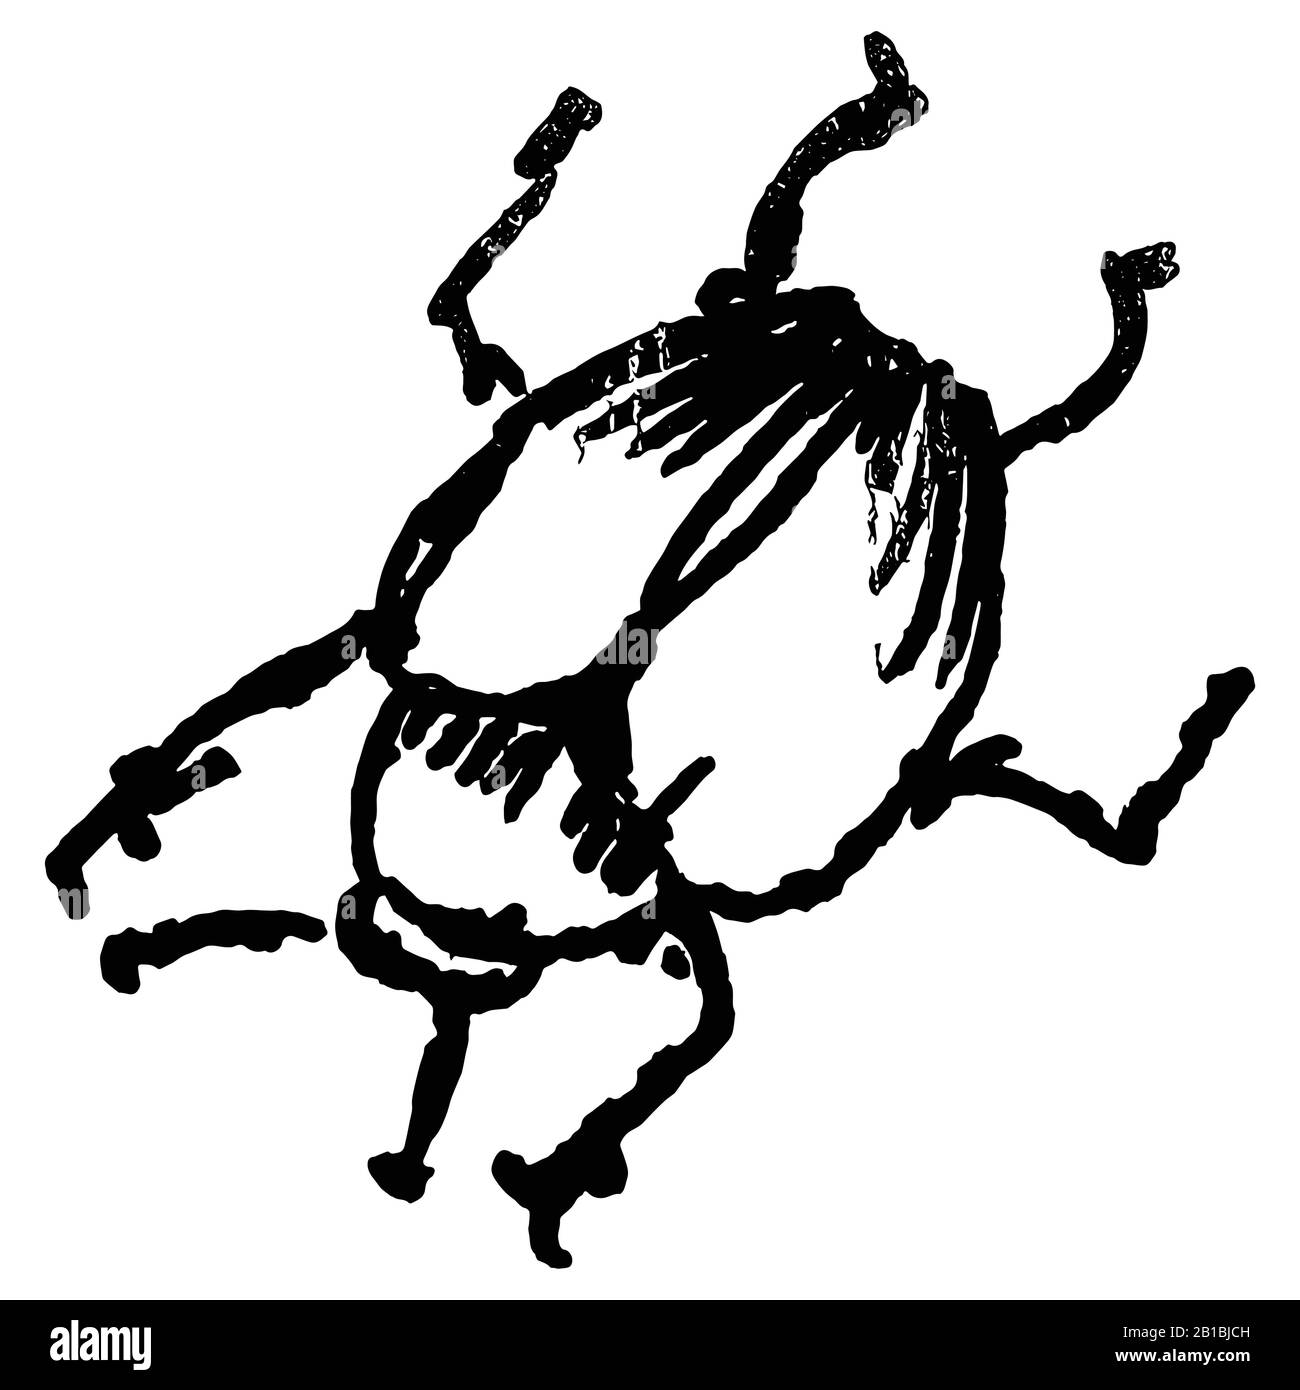 Lindo dibujo animado diminuta fruta escarabajo vector clipart. Insecto de la peste del jardín. Athropod fideos naive de insecto biológico alado. Tallarines de fauna silvestre Ilustración del Vector